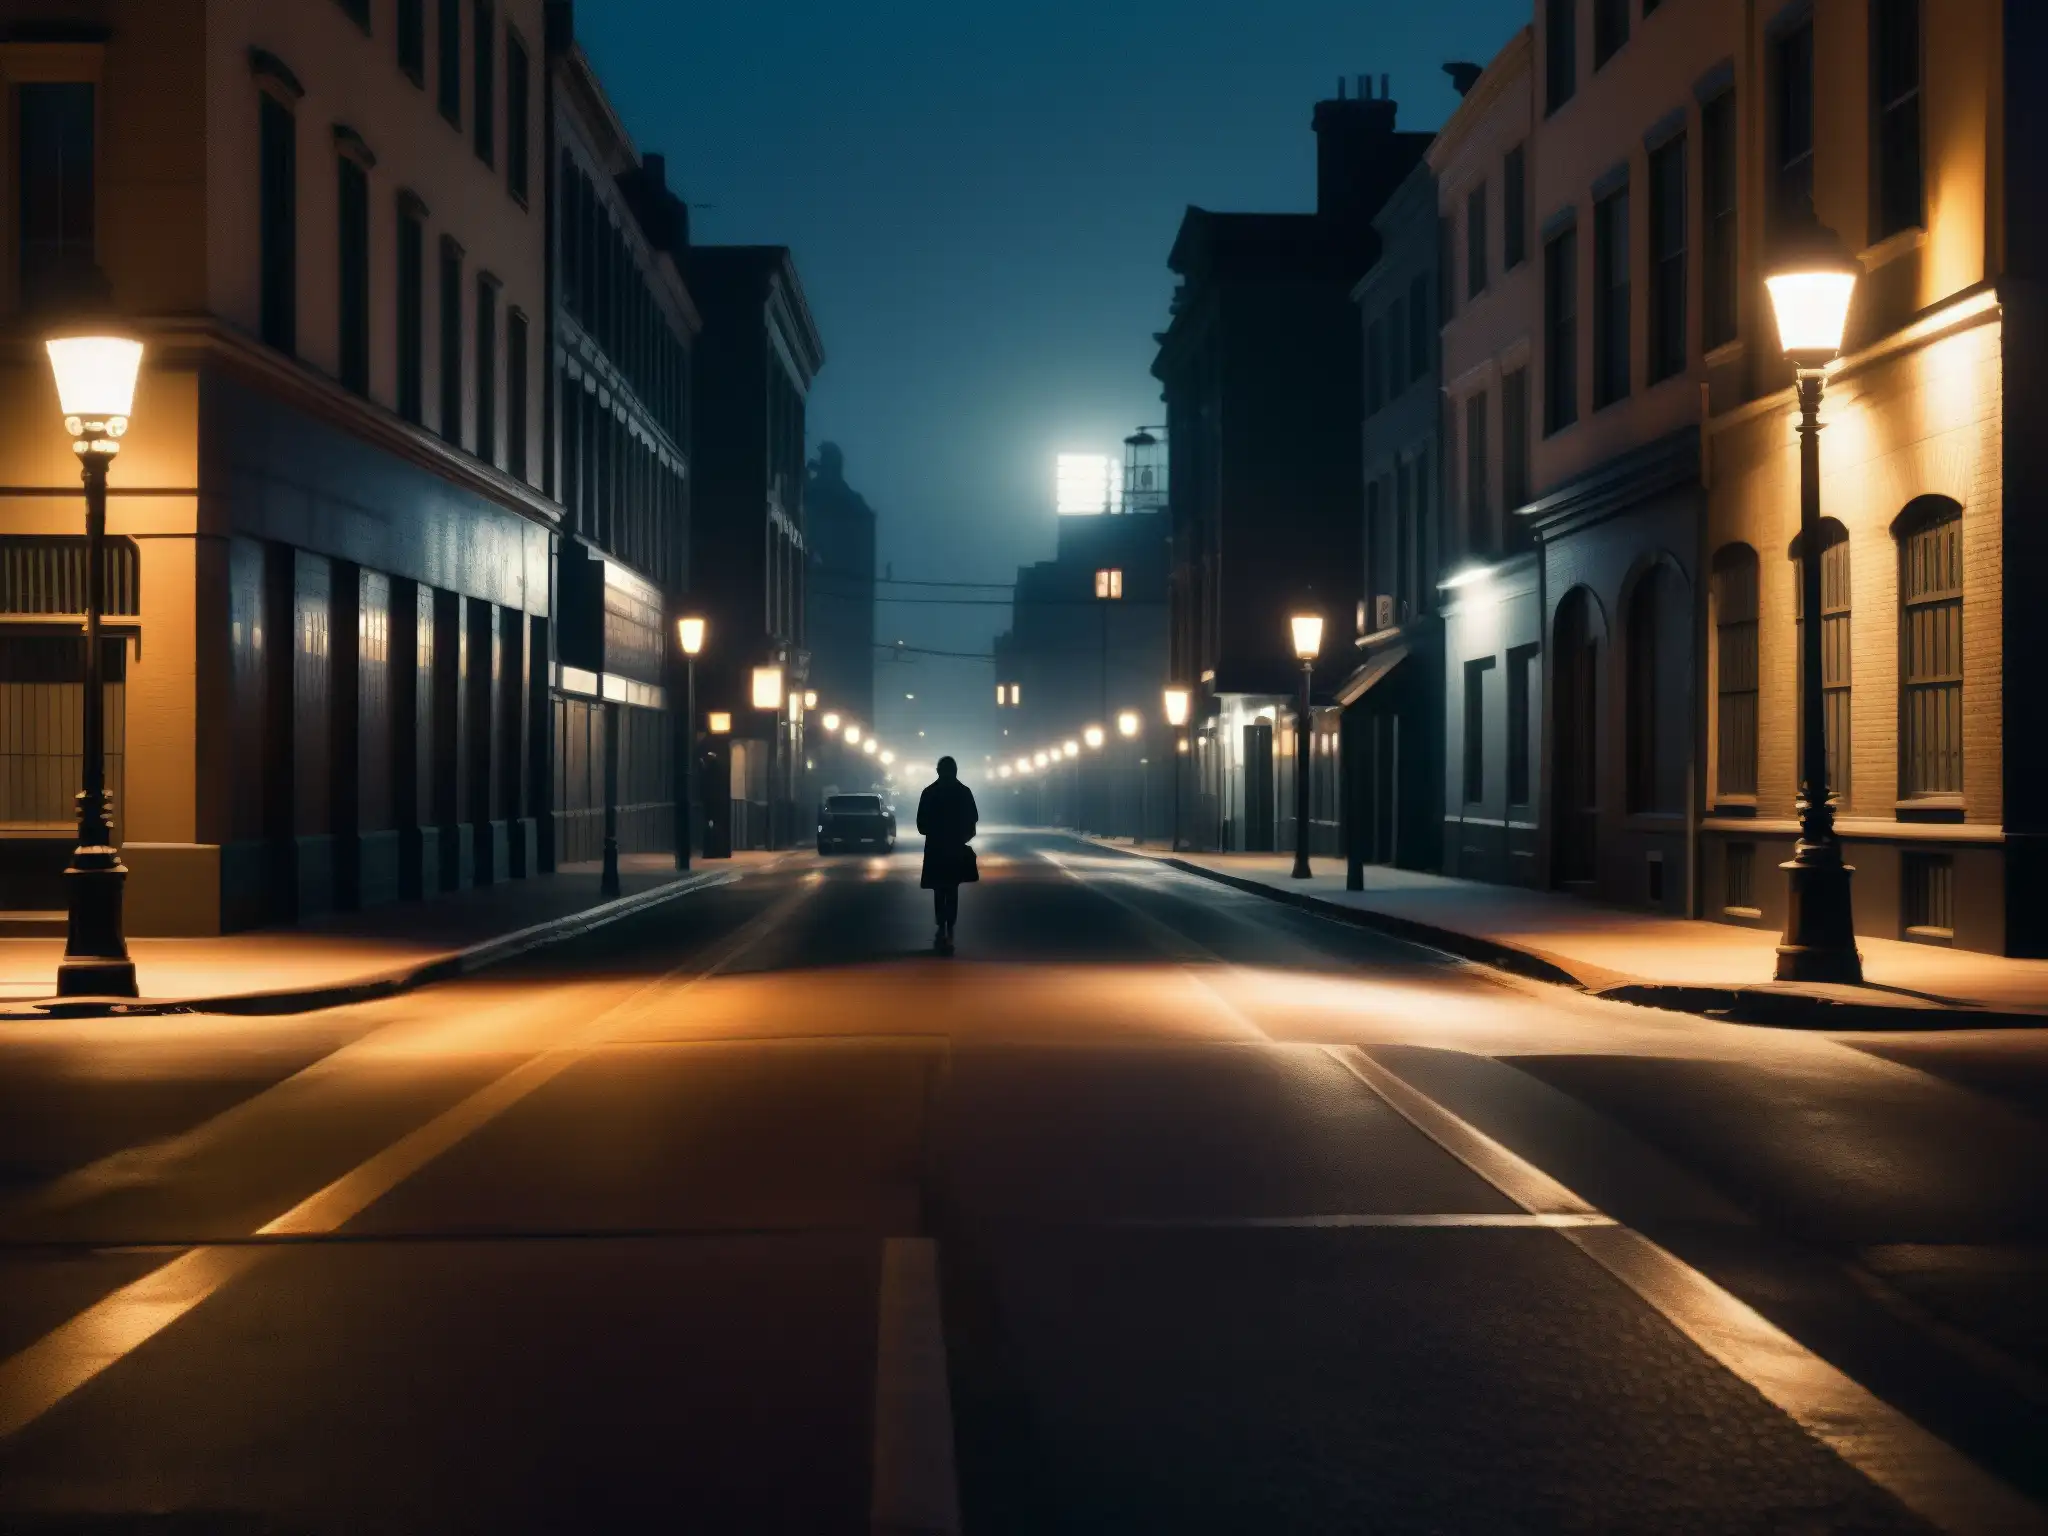 Una misteriosa calle de la ciudad de noche, con sombras inquietantes proyectadas por luces parpadeantes